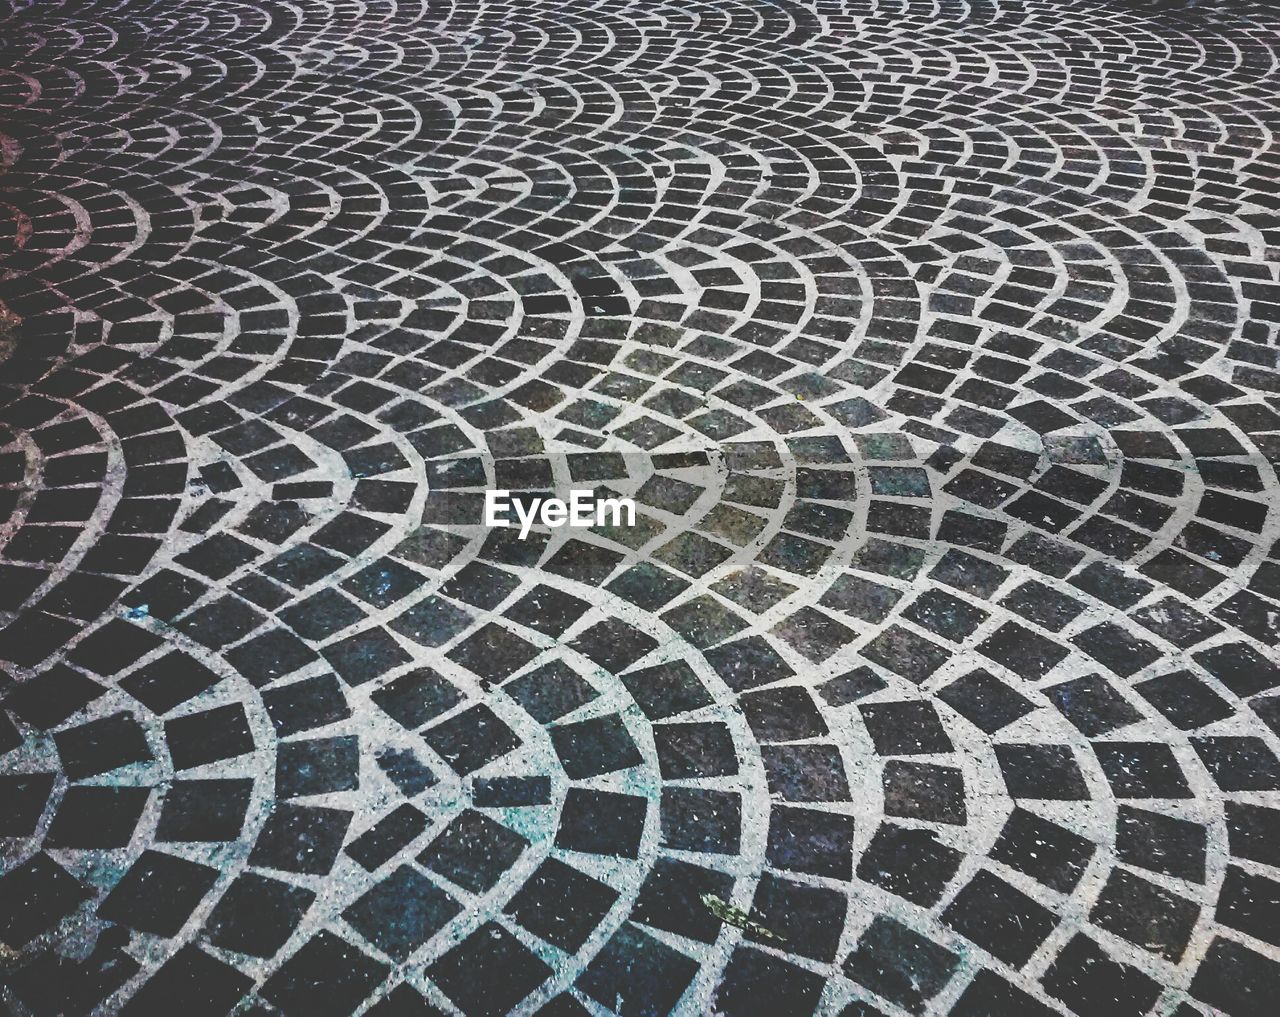 Patterned tile flooring